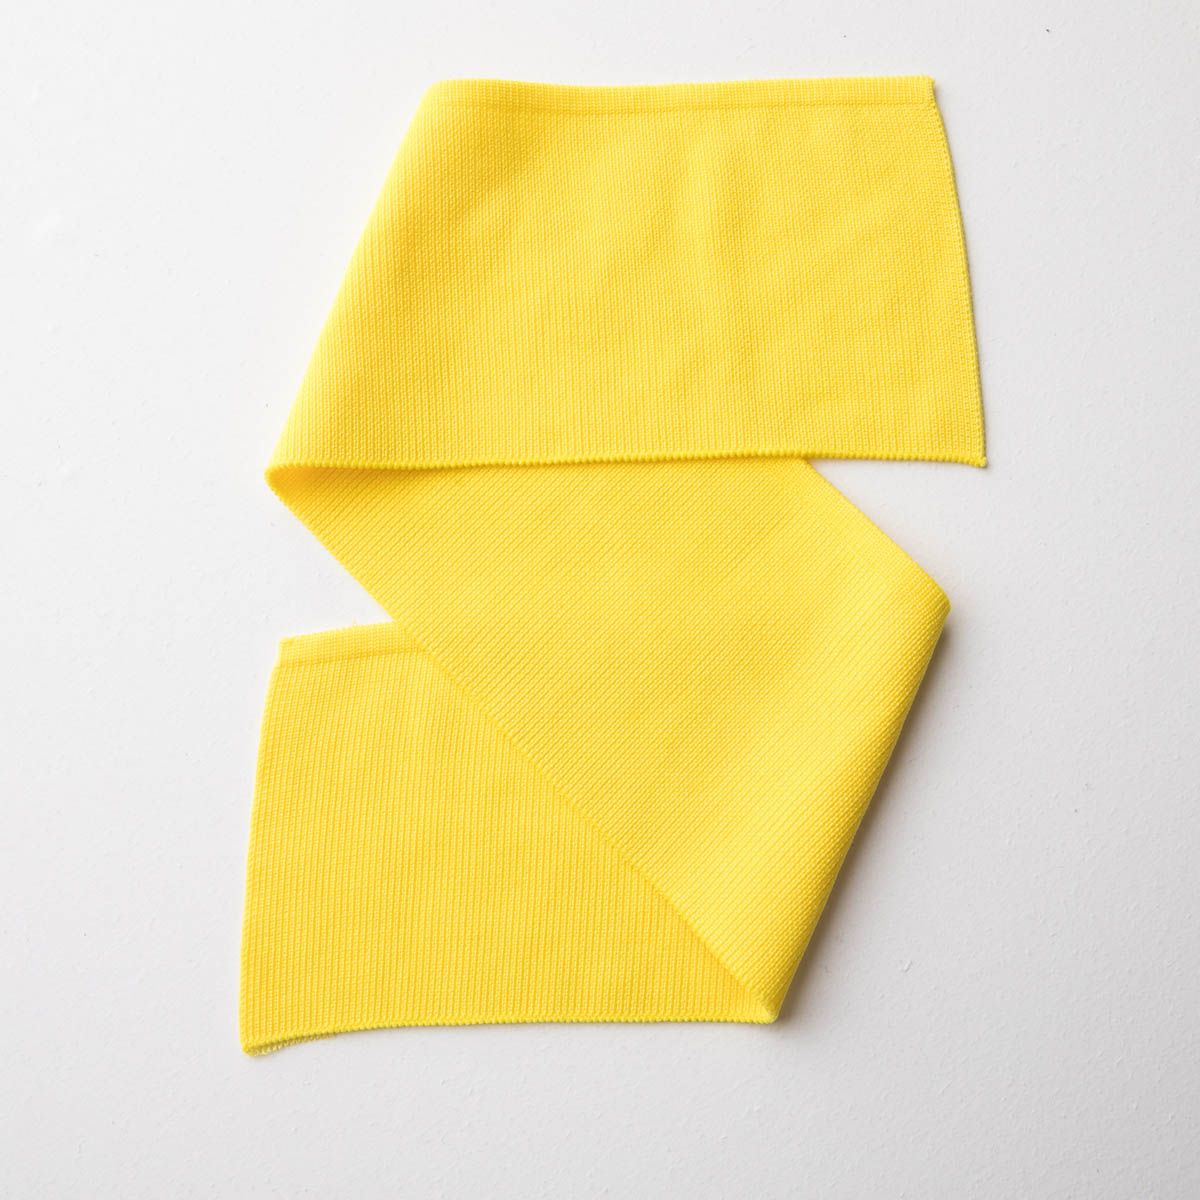 Gola Poliéster -  Amarelo Bandeira